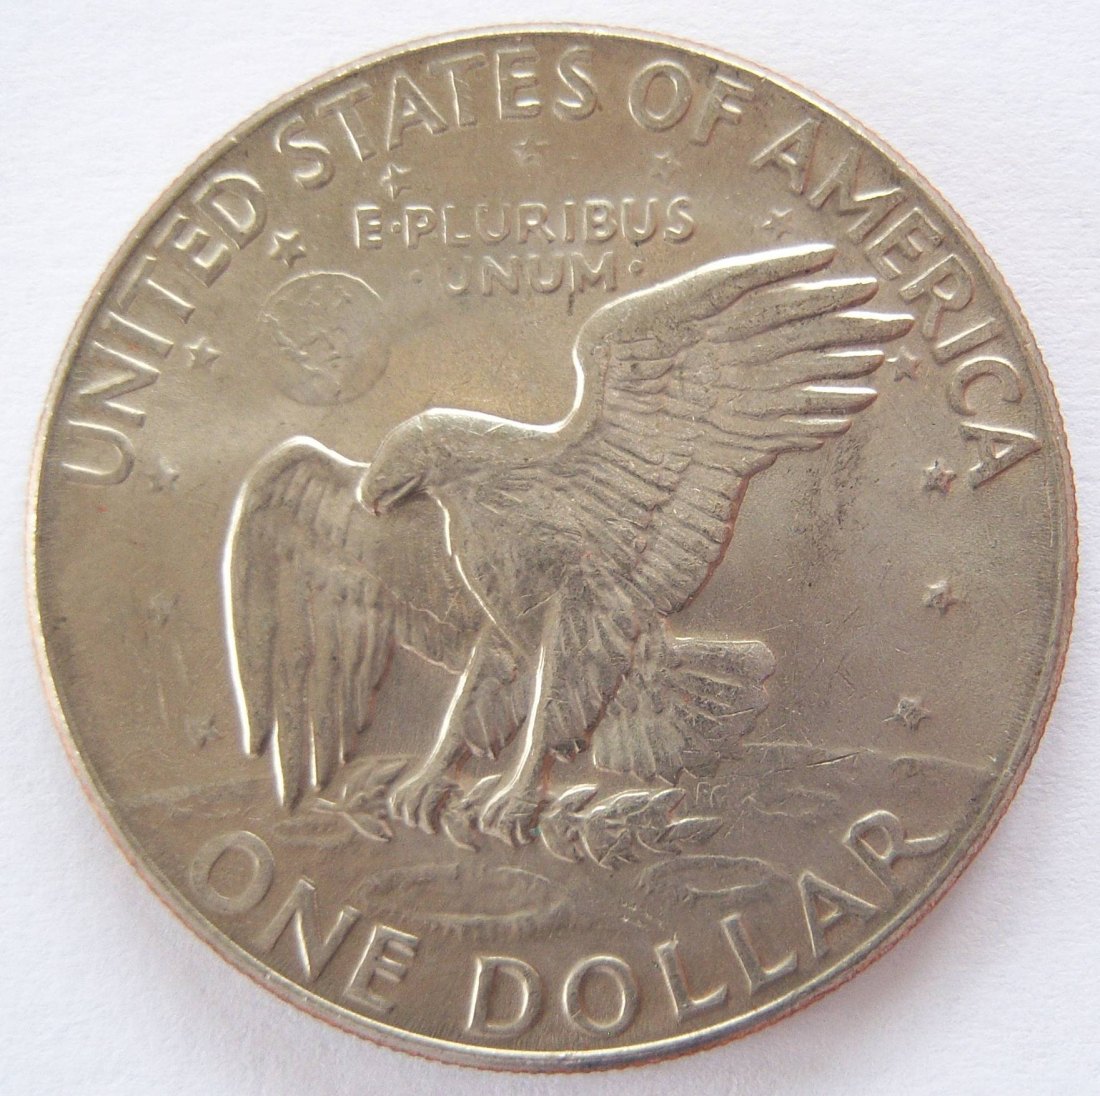  USA Eisenhower 1 One Dollar 1977 D   